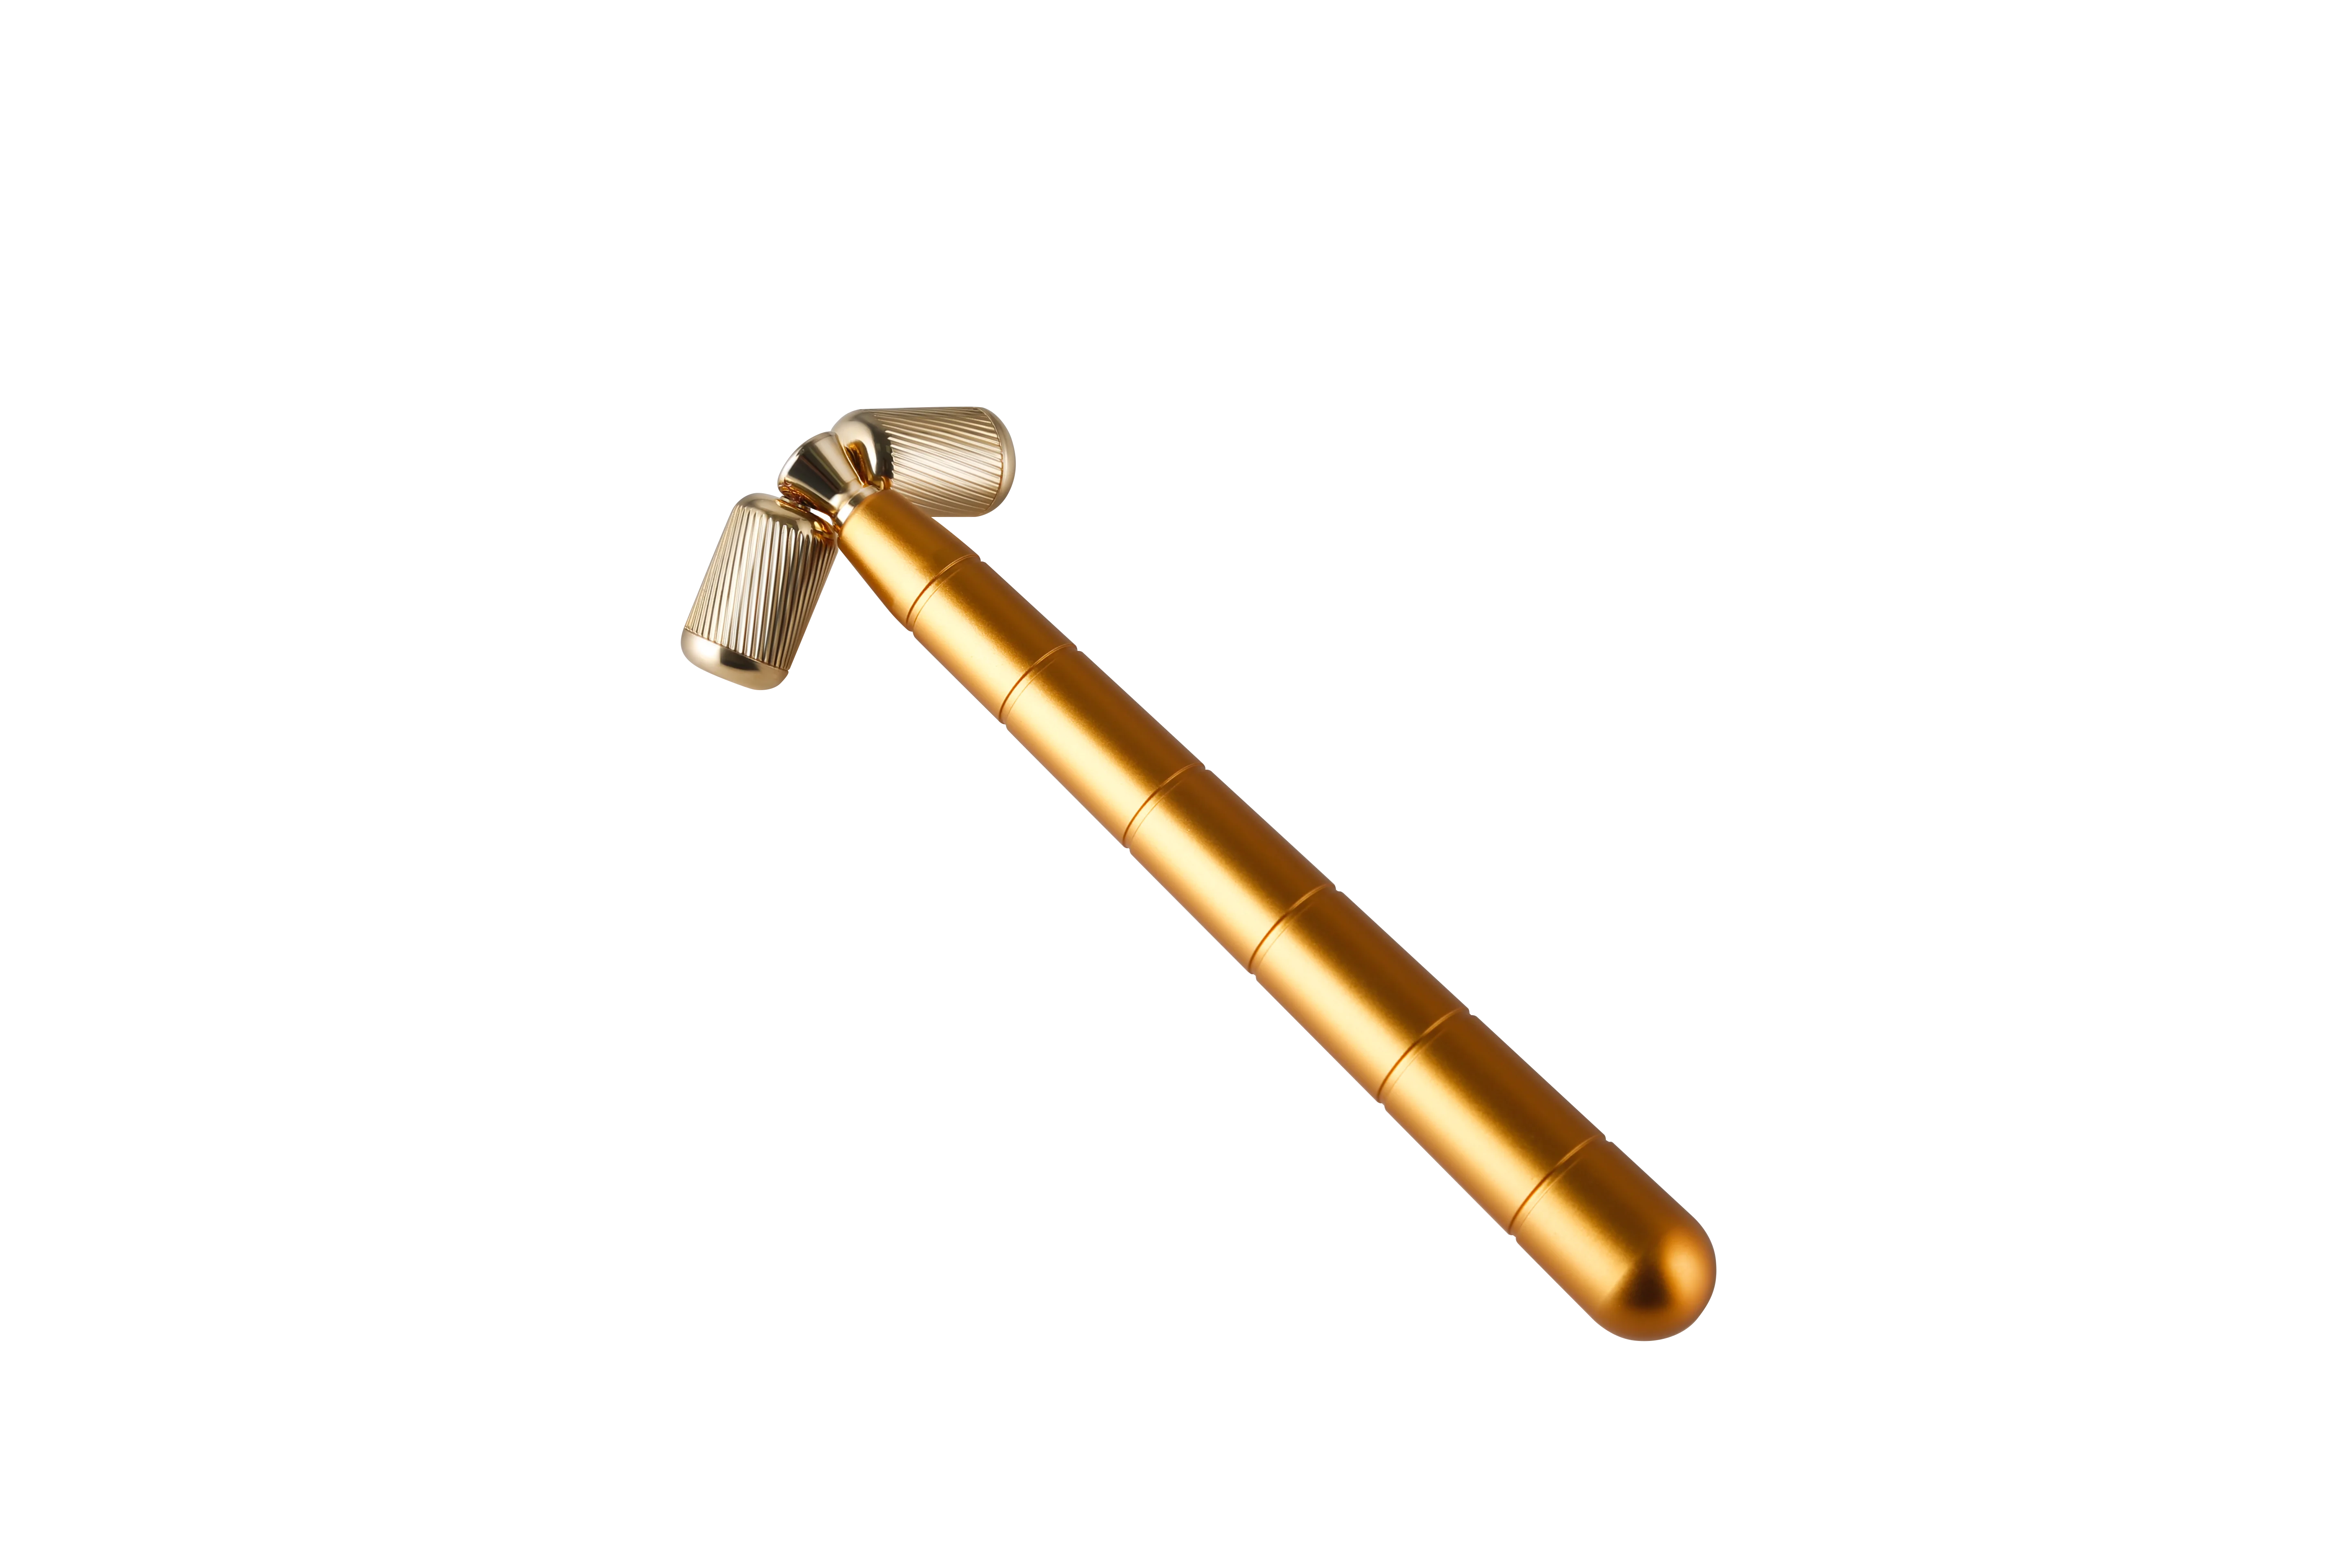 Sainbeauty V shape face-lifting instrument massage roller massage stick golden stick thin Gold Face Massager